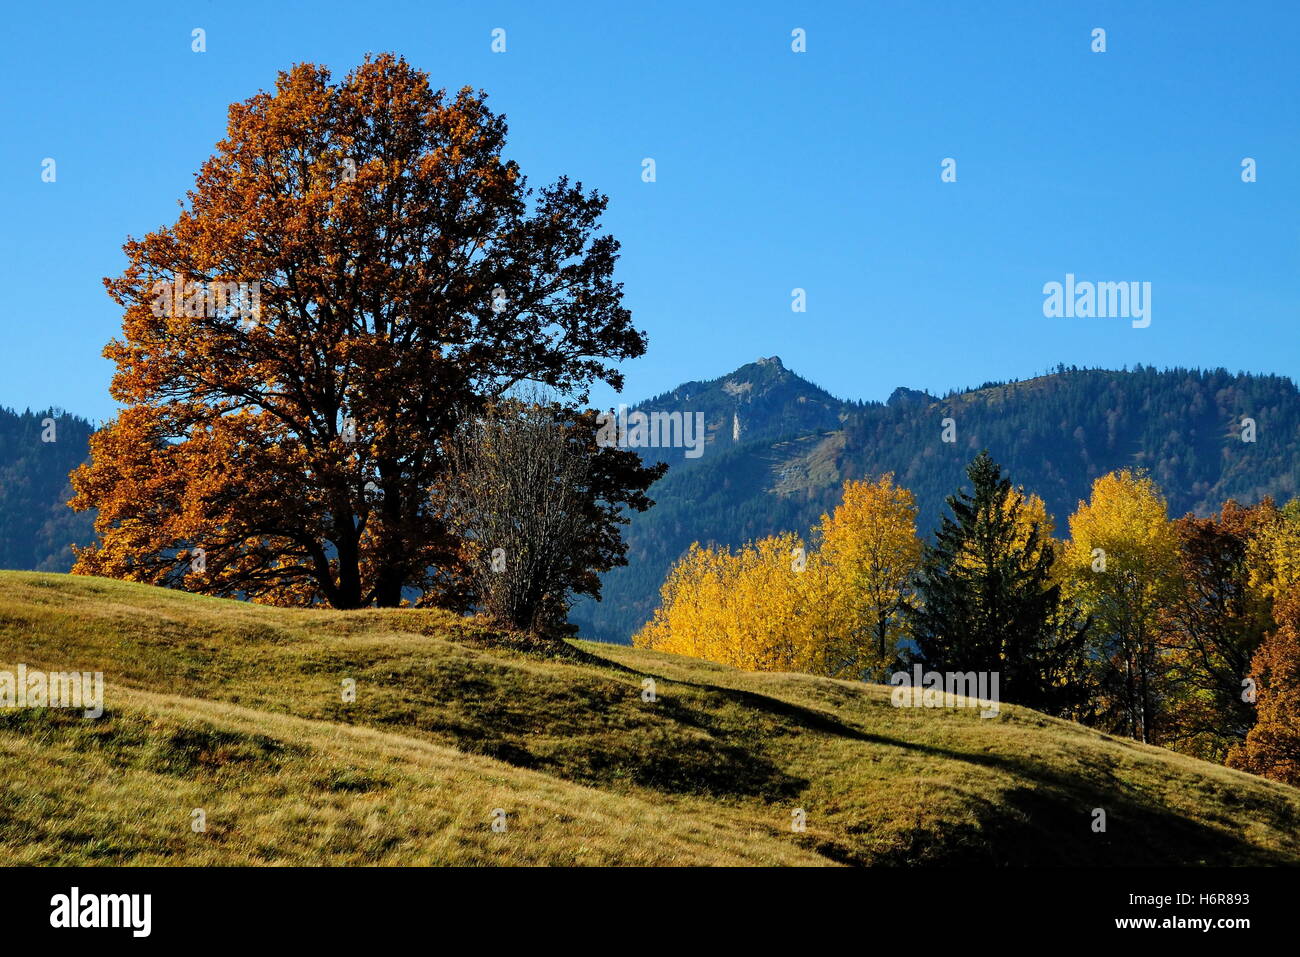 Árbol Alpes árboles caducifolios la cima de la montaña la naturaleza caída del árbol del otoño árboles montañas marrón parduzco morena deja Foto de stock